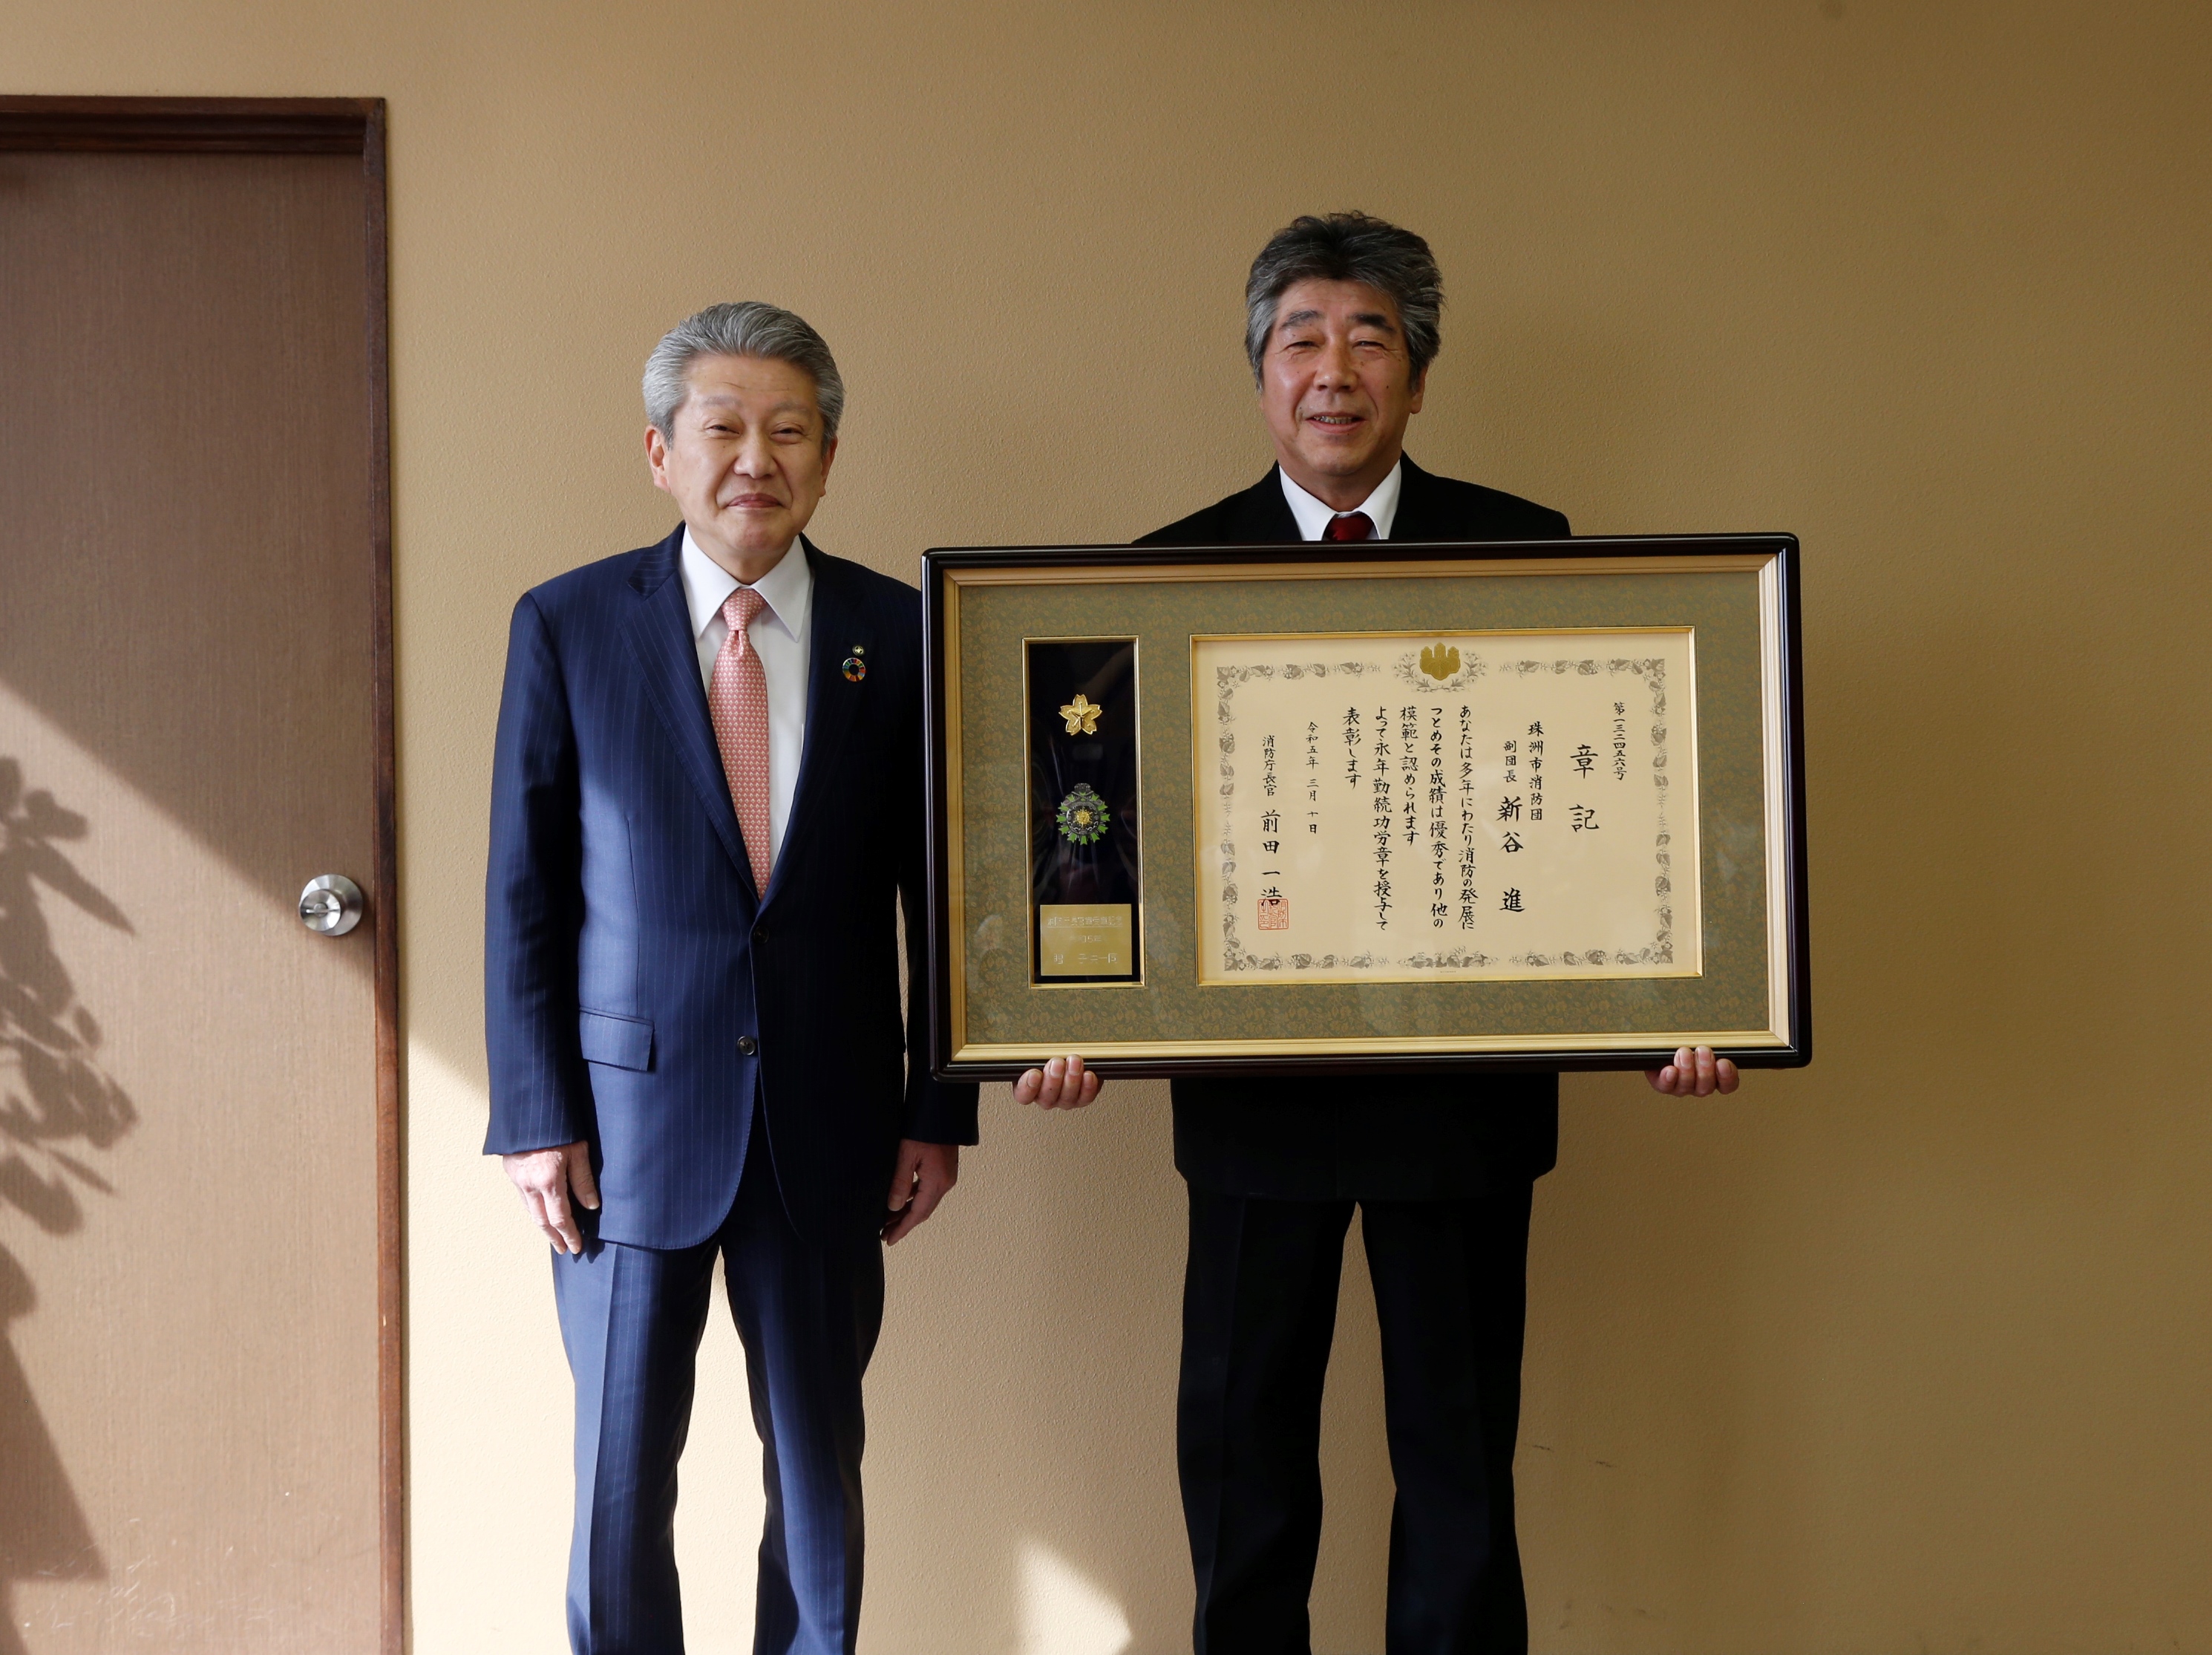 消防庁長官表彰永年勤続功労章を受章した新谷さんの画像